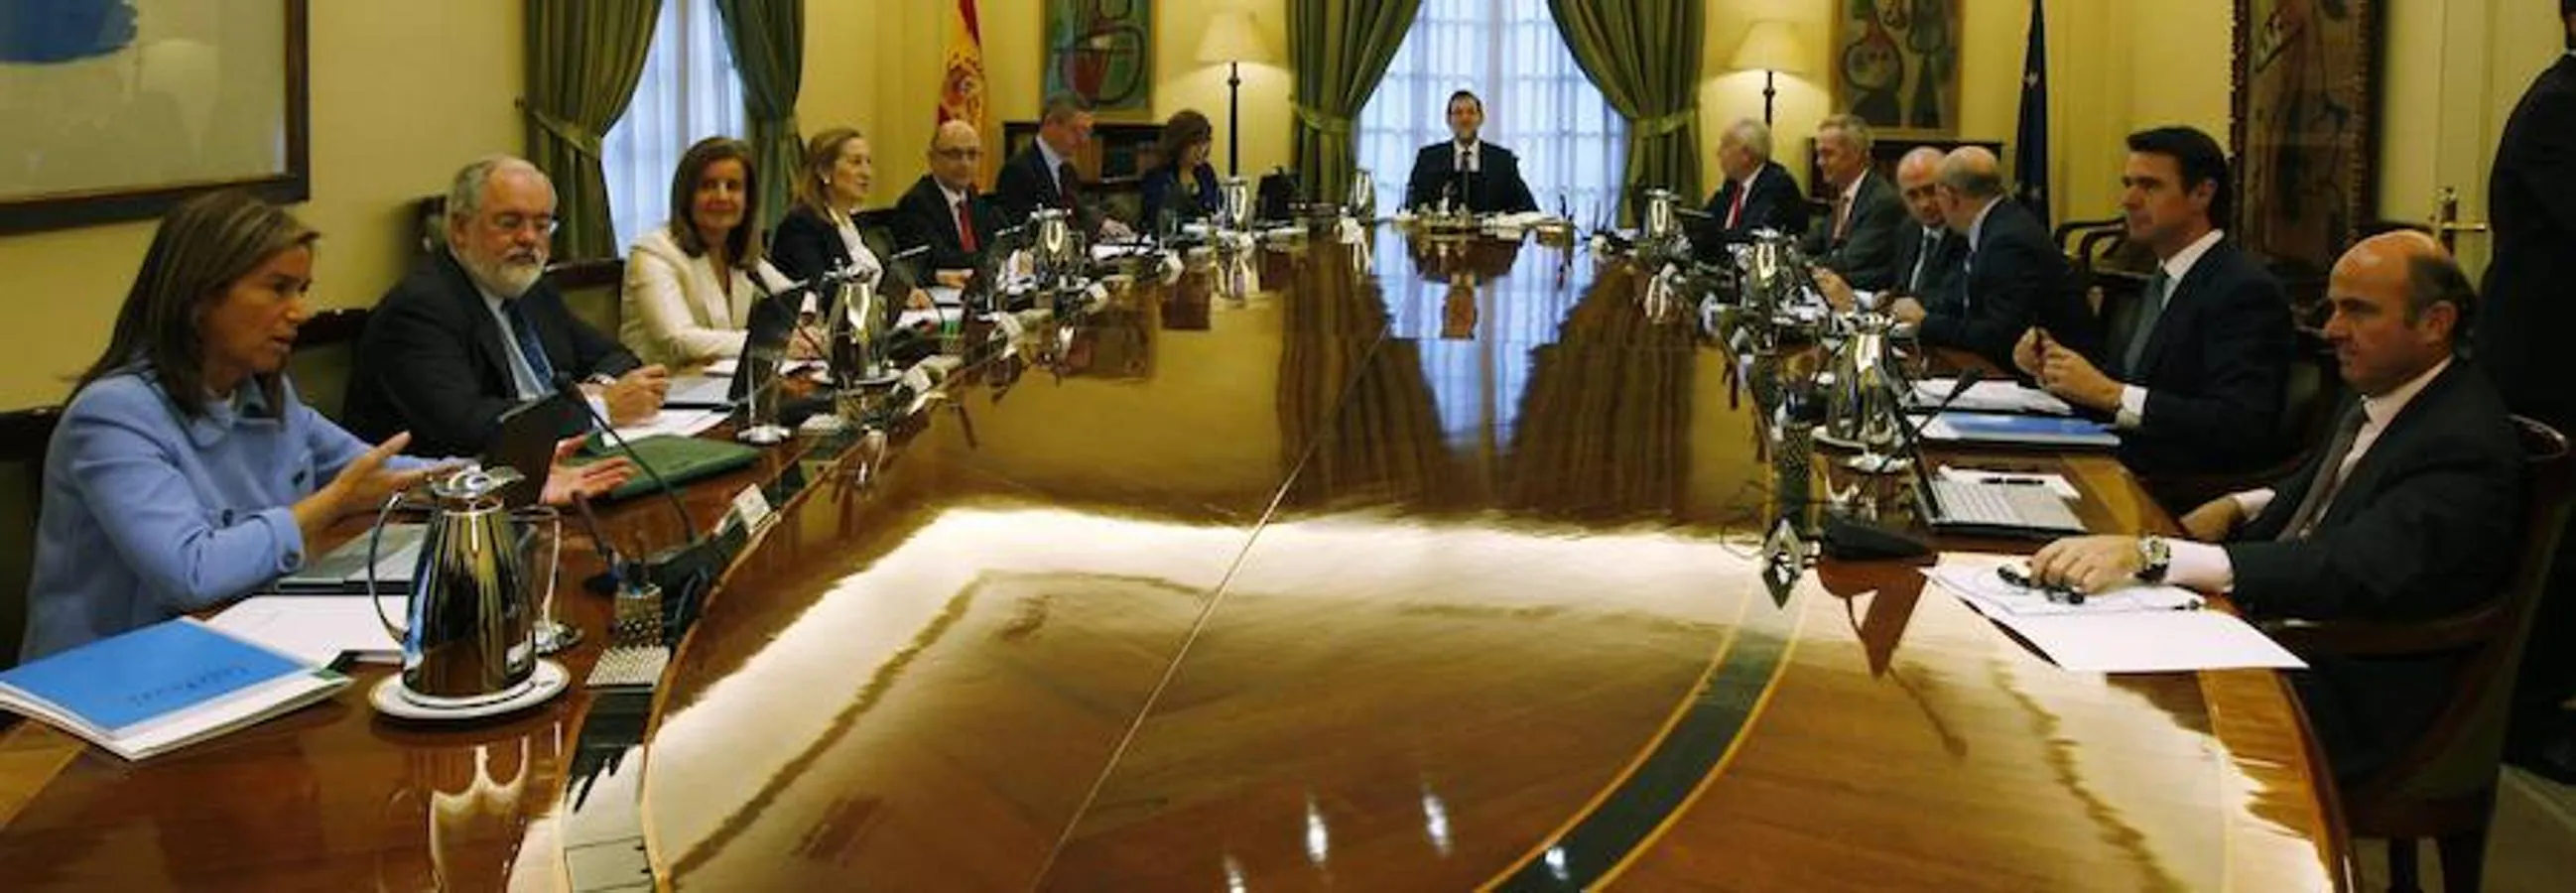 Primera reunión del Consejo de Ministros del Gobierno de Mariano Rajoy, el 23 de diciembre de 2011. 